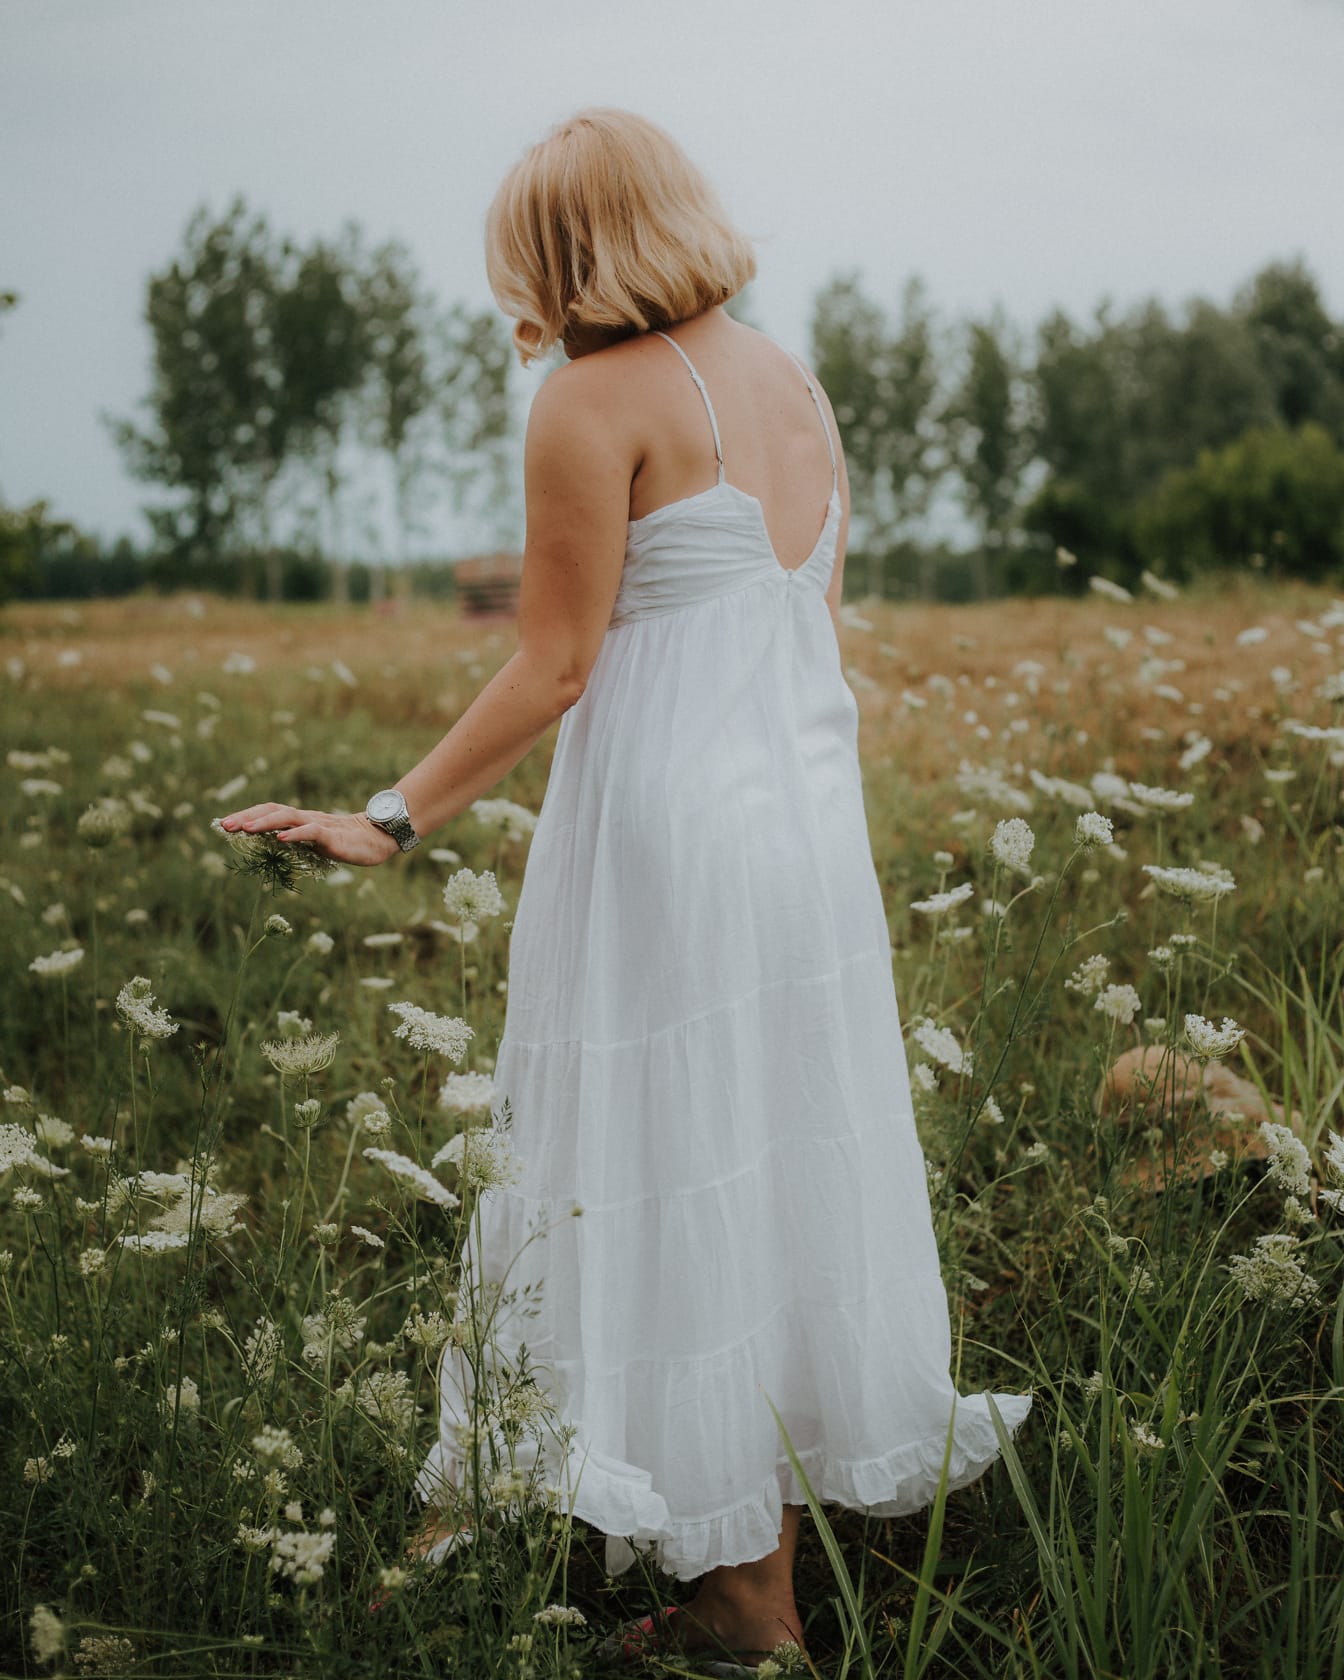 Mujer rubia en el prado con vestido blanco